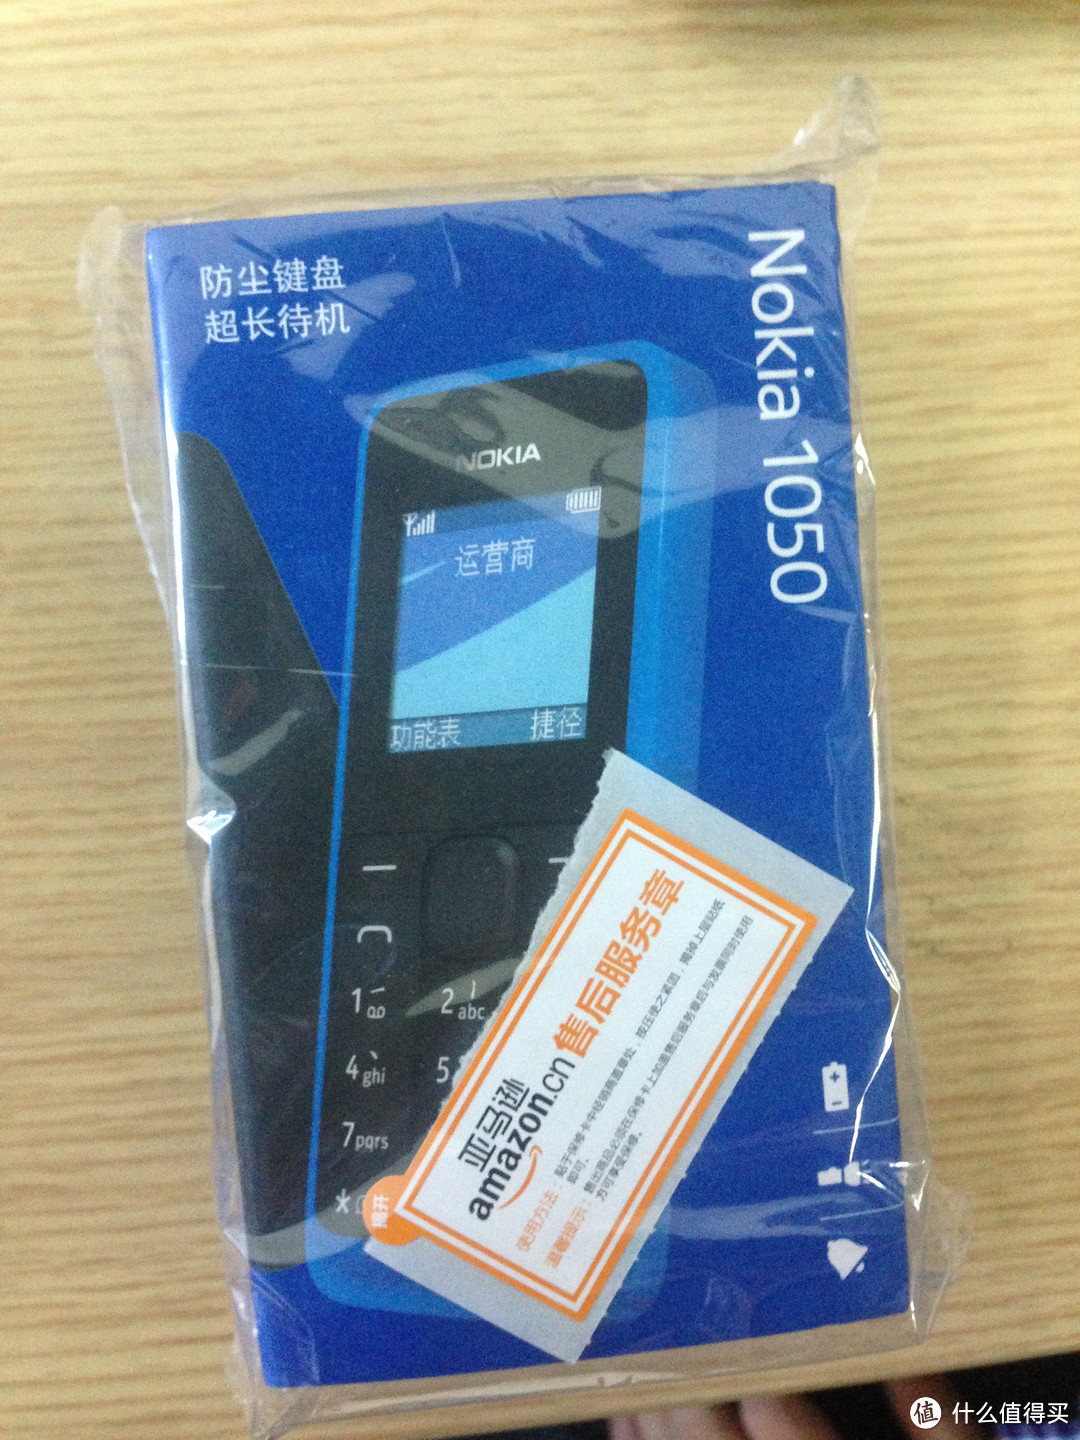 实惠之选-- Nokia 诺基亚1050